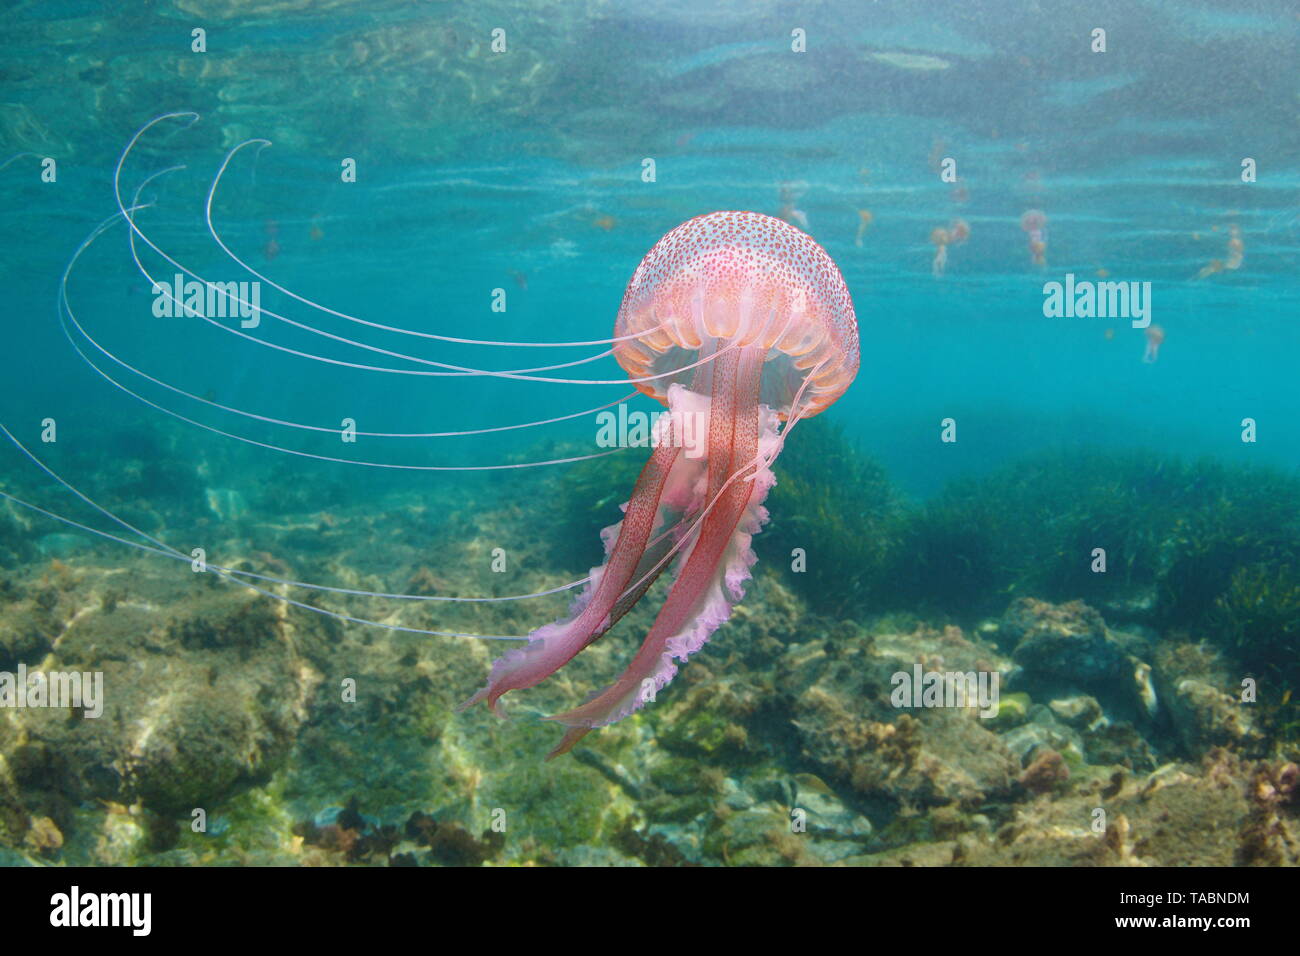 Belles méduses sous l'eau à la mer Méditerranée, Mauves Pelagia noctiluca stinger Banque D'Images